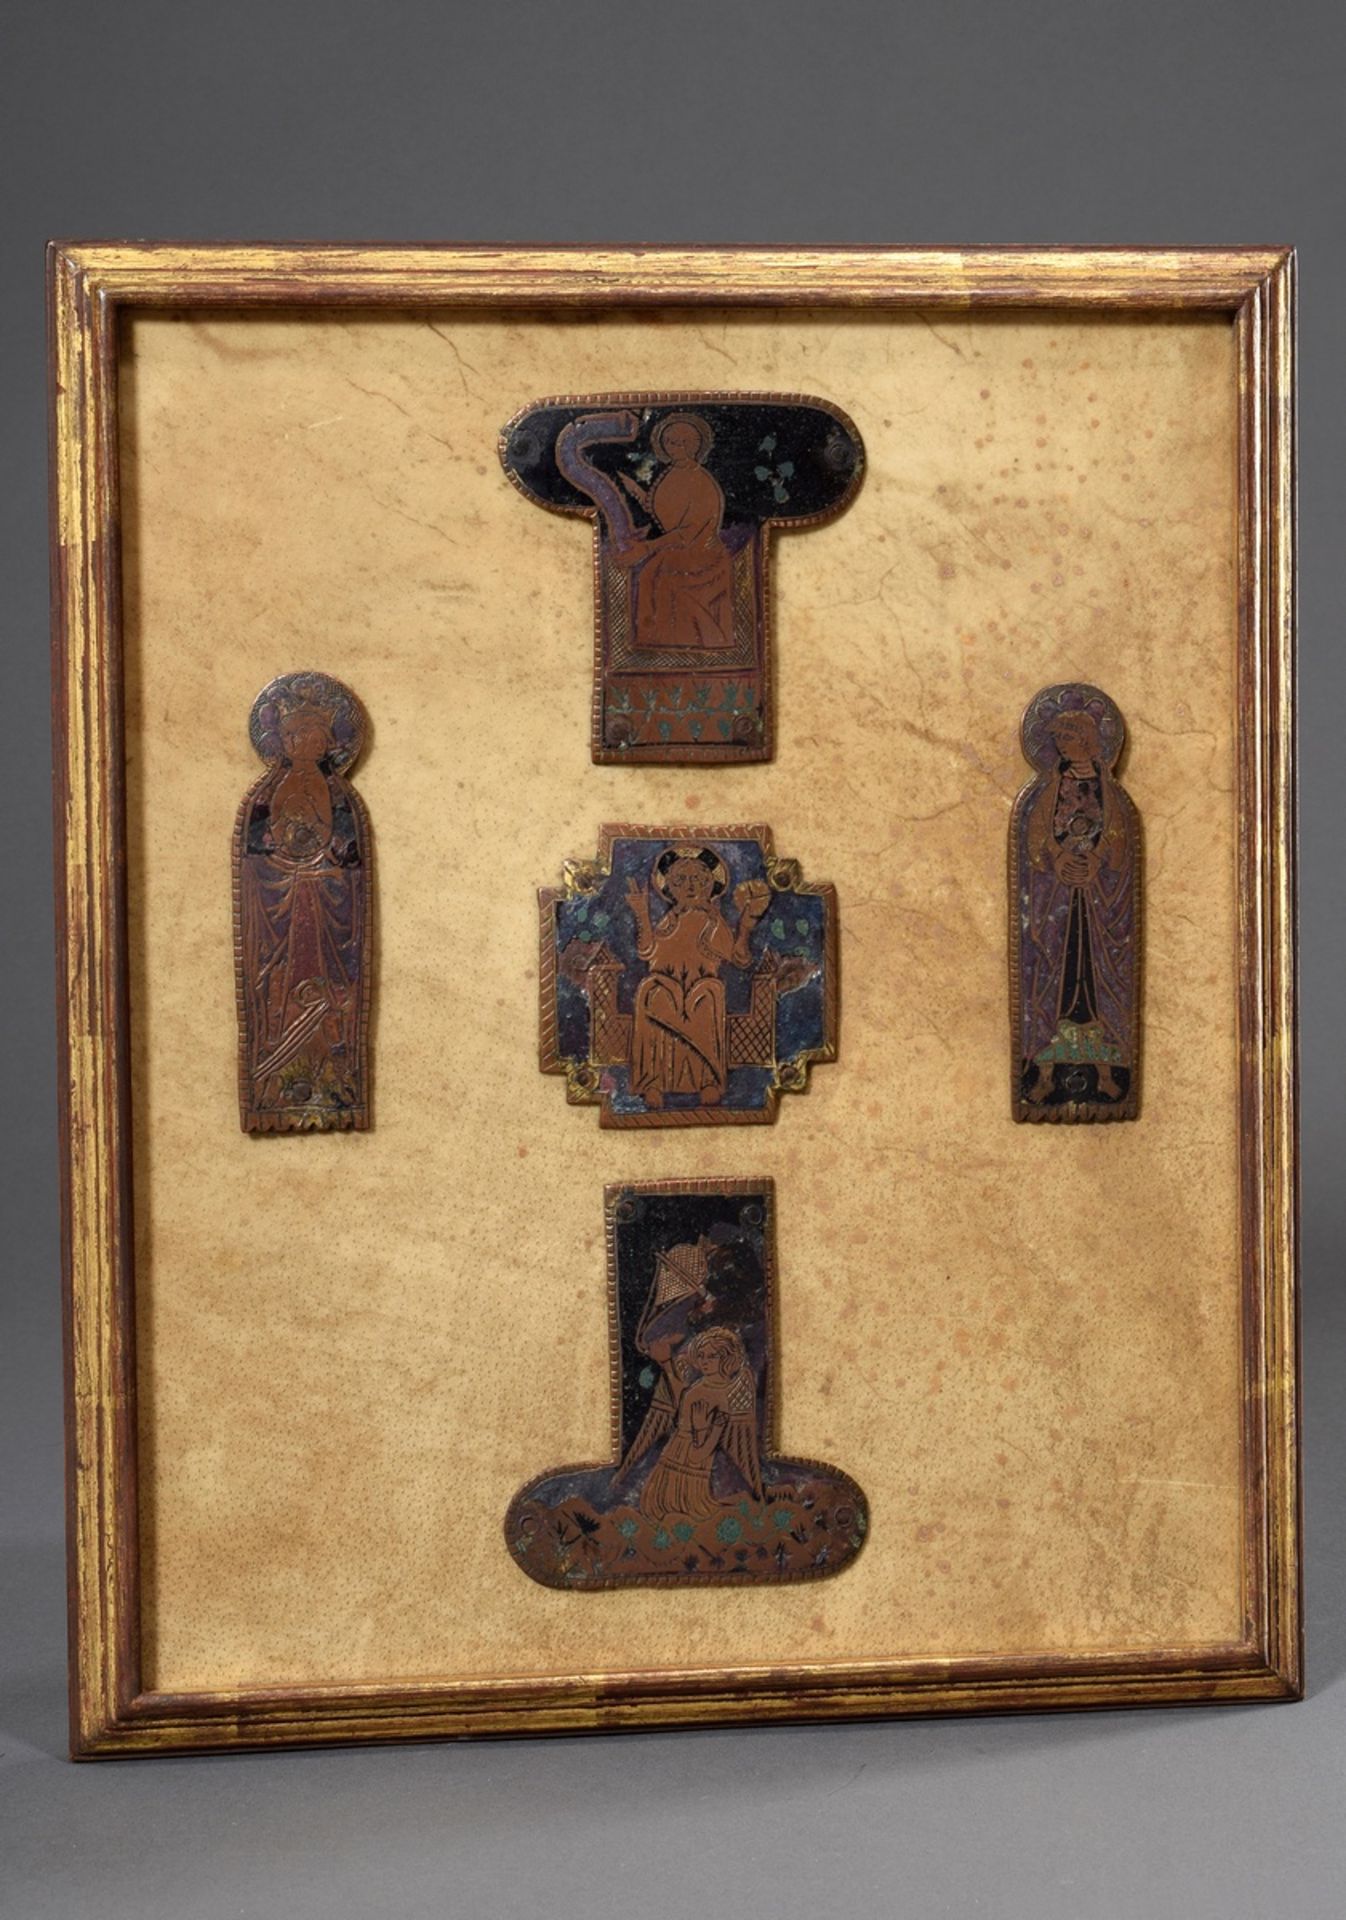 5 Teile Limoges Kruzifix Beschläge mit Champlevé Emaille und Resten von Vergoldung "Christus als We